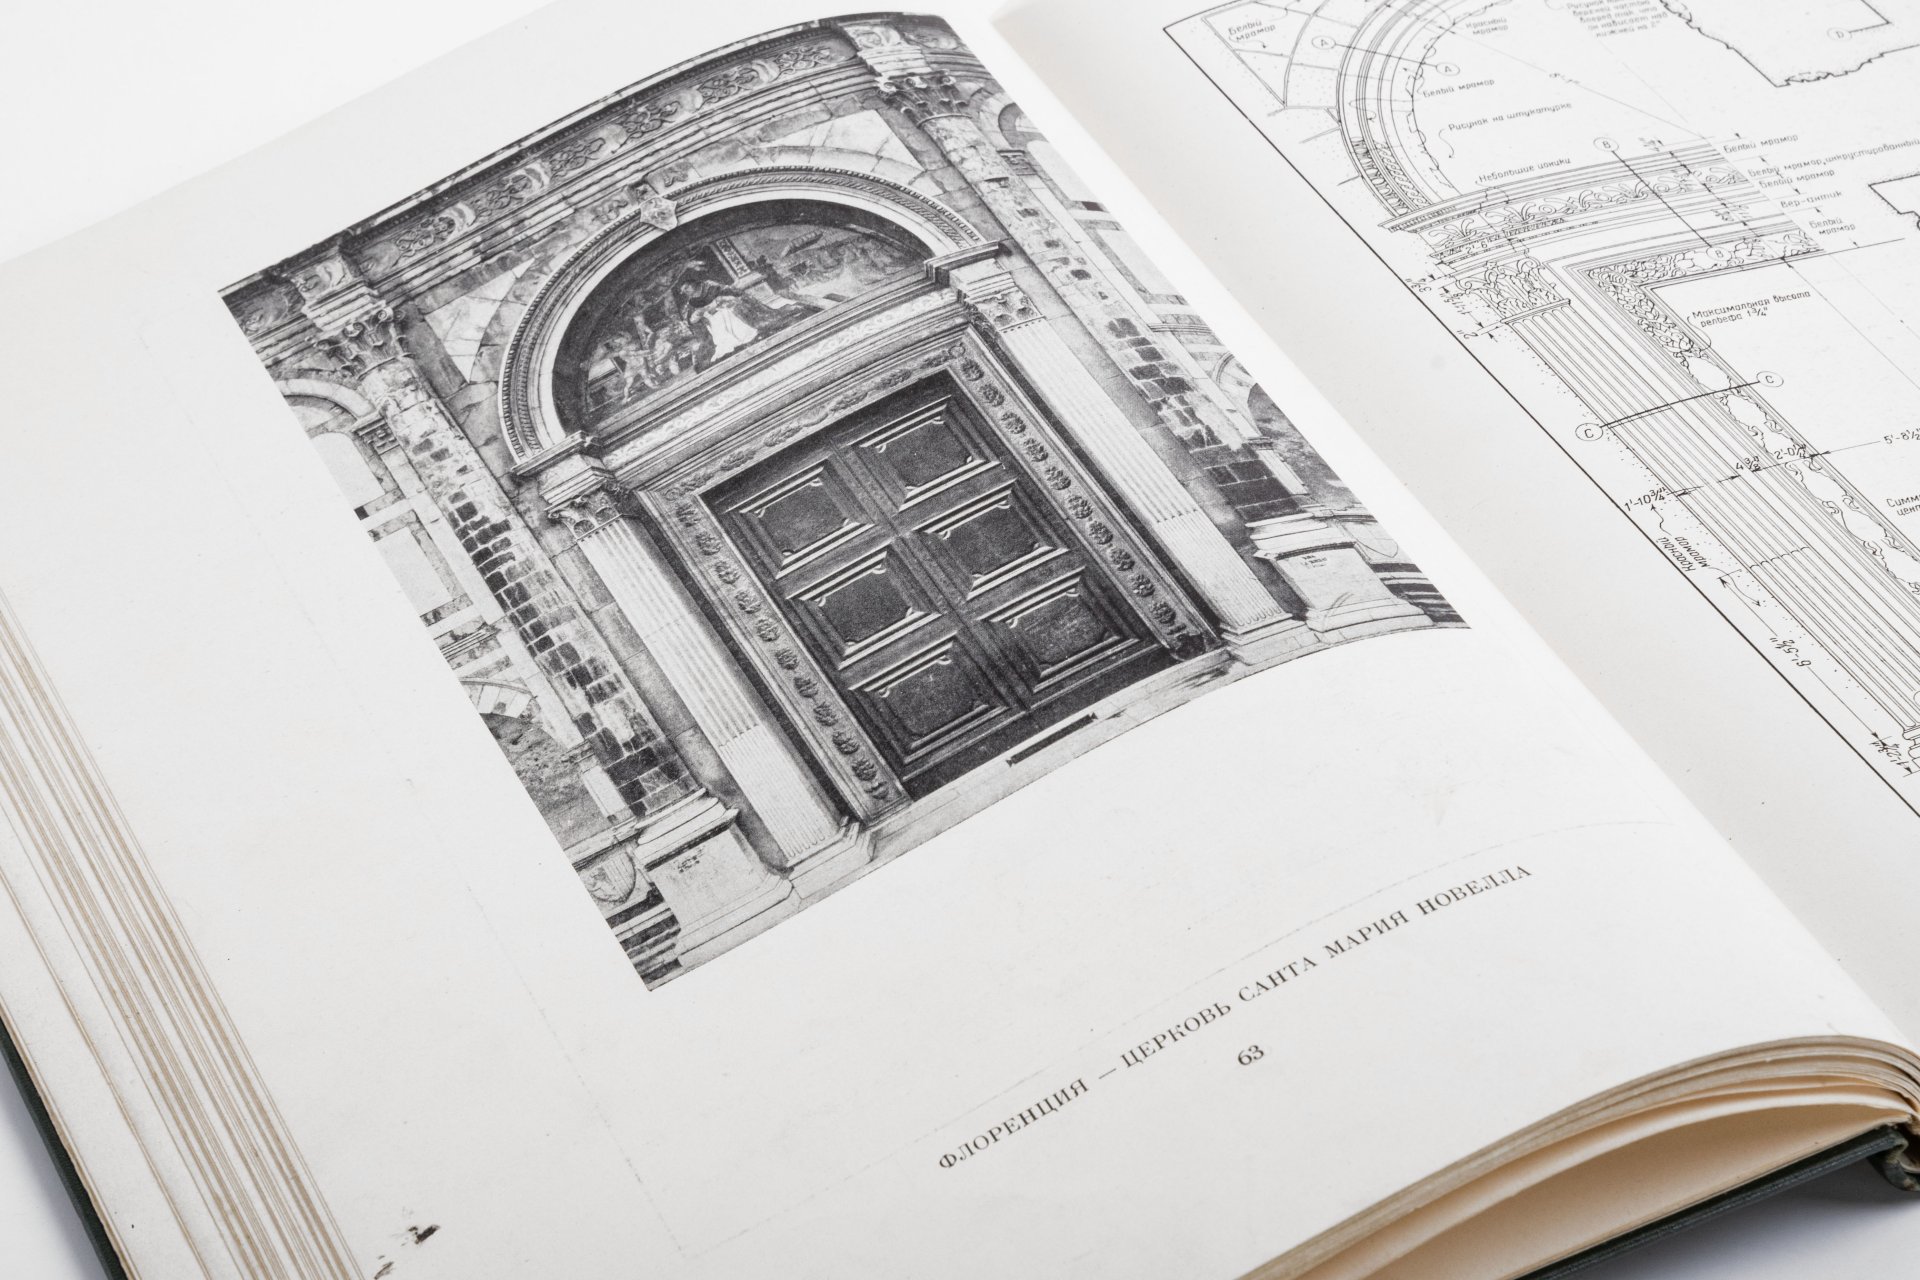 Двери и порталы в итальянской архитектуре